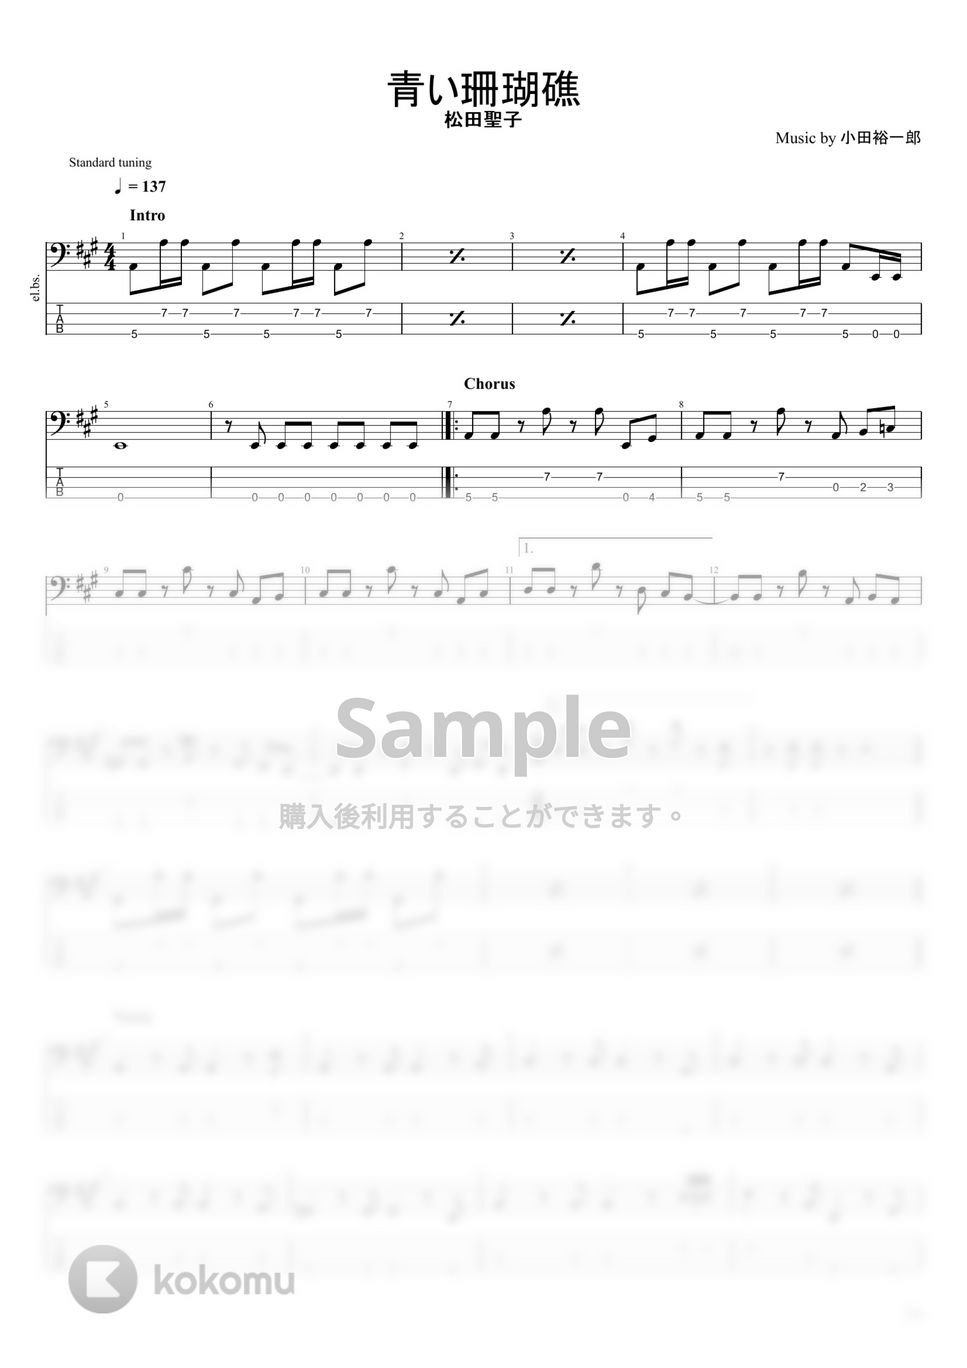 松田聖子 - 松田聖子楽譜集 (10曲) by まっきん